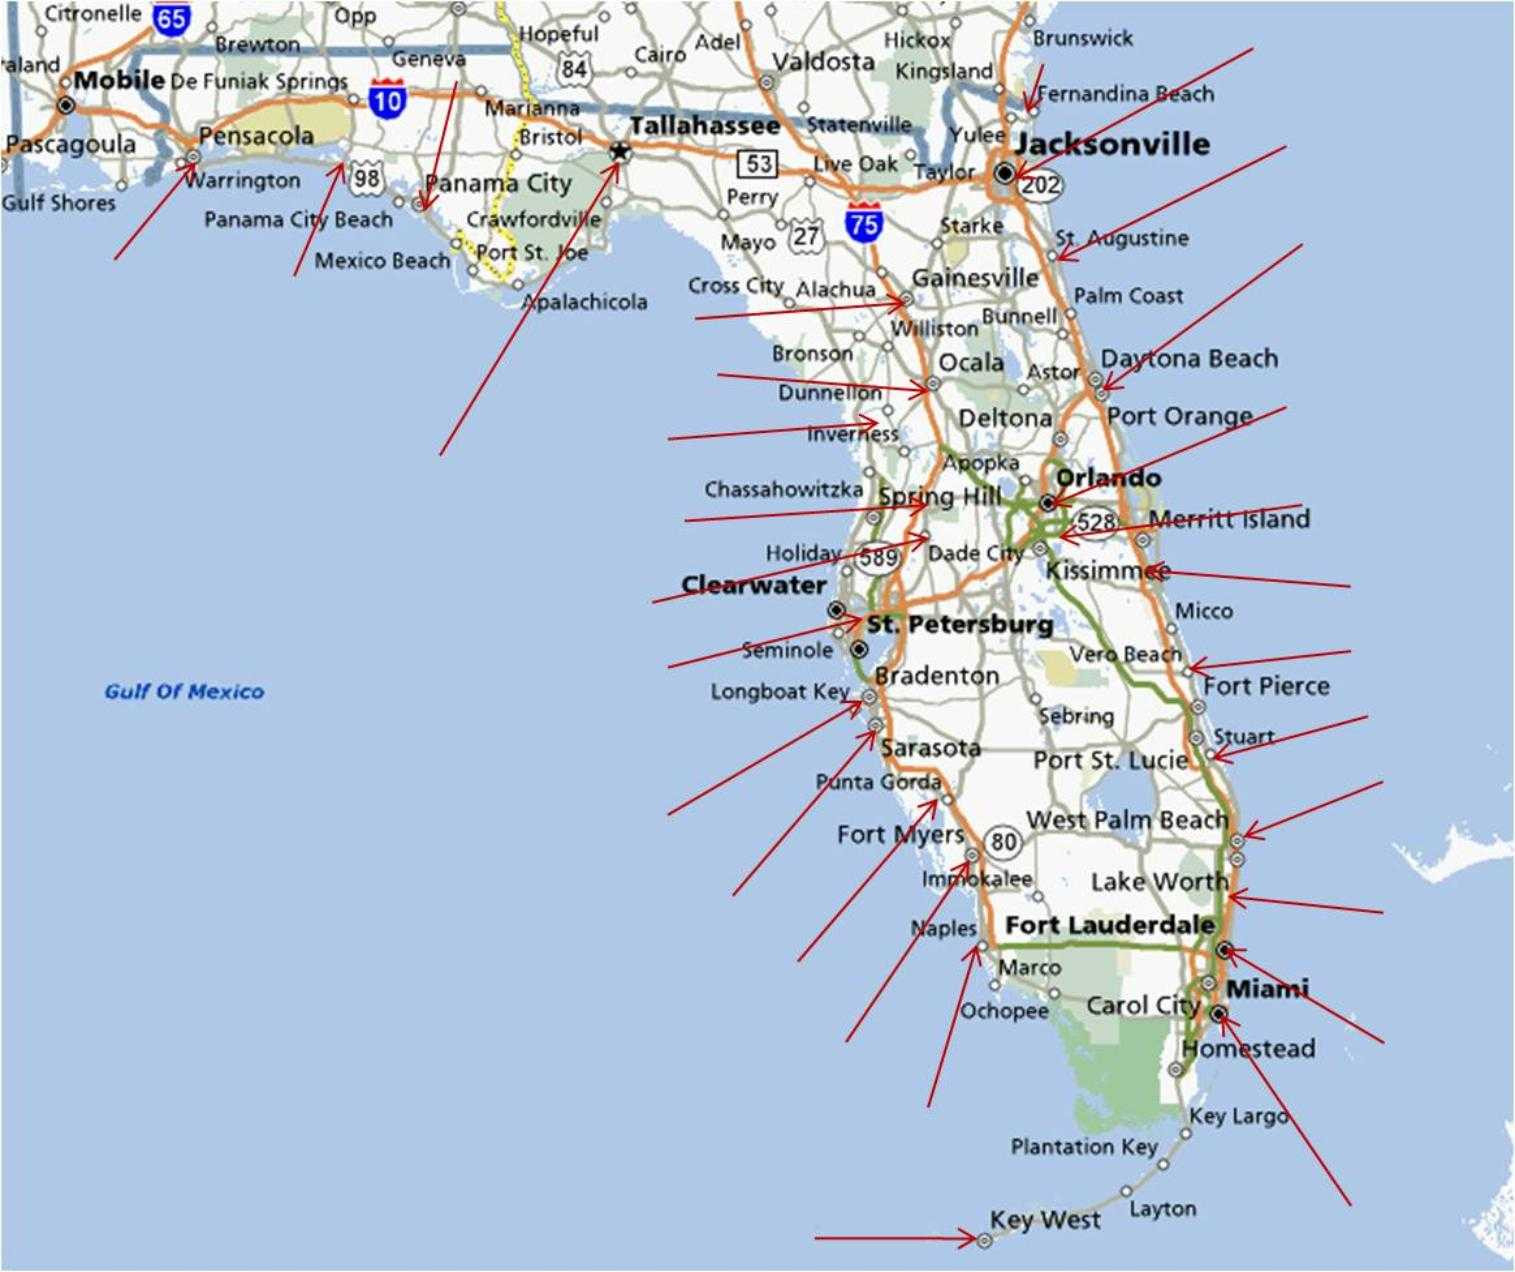 Mexico Beach Map Art Print Florida Map Art Port St Joe Map | Etsy - St Joe Florida Map